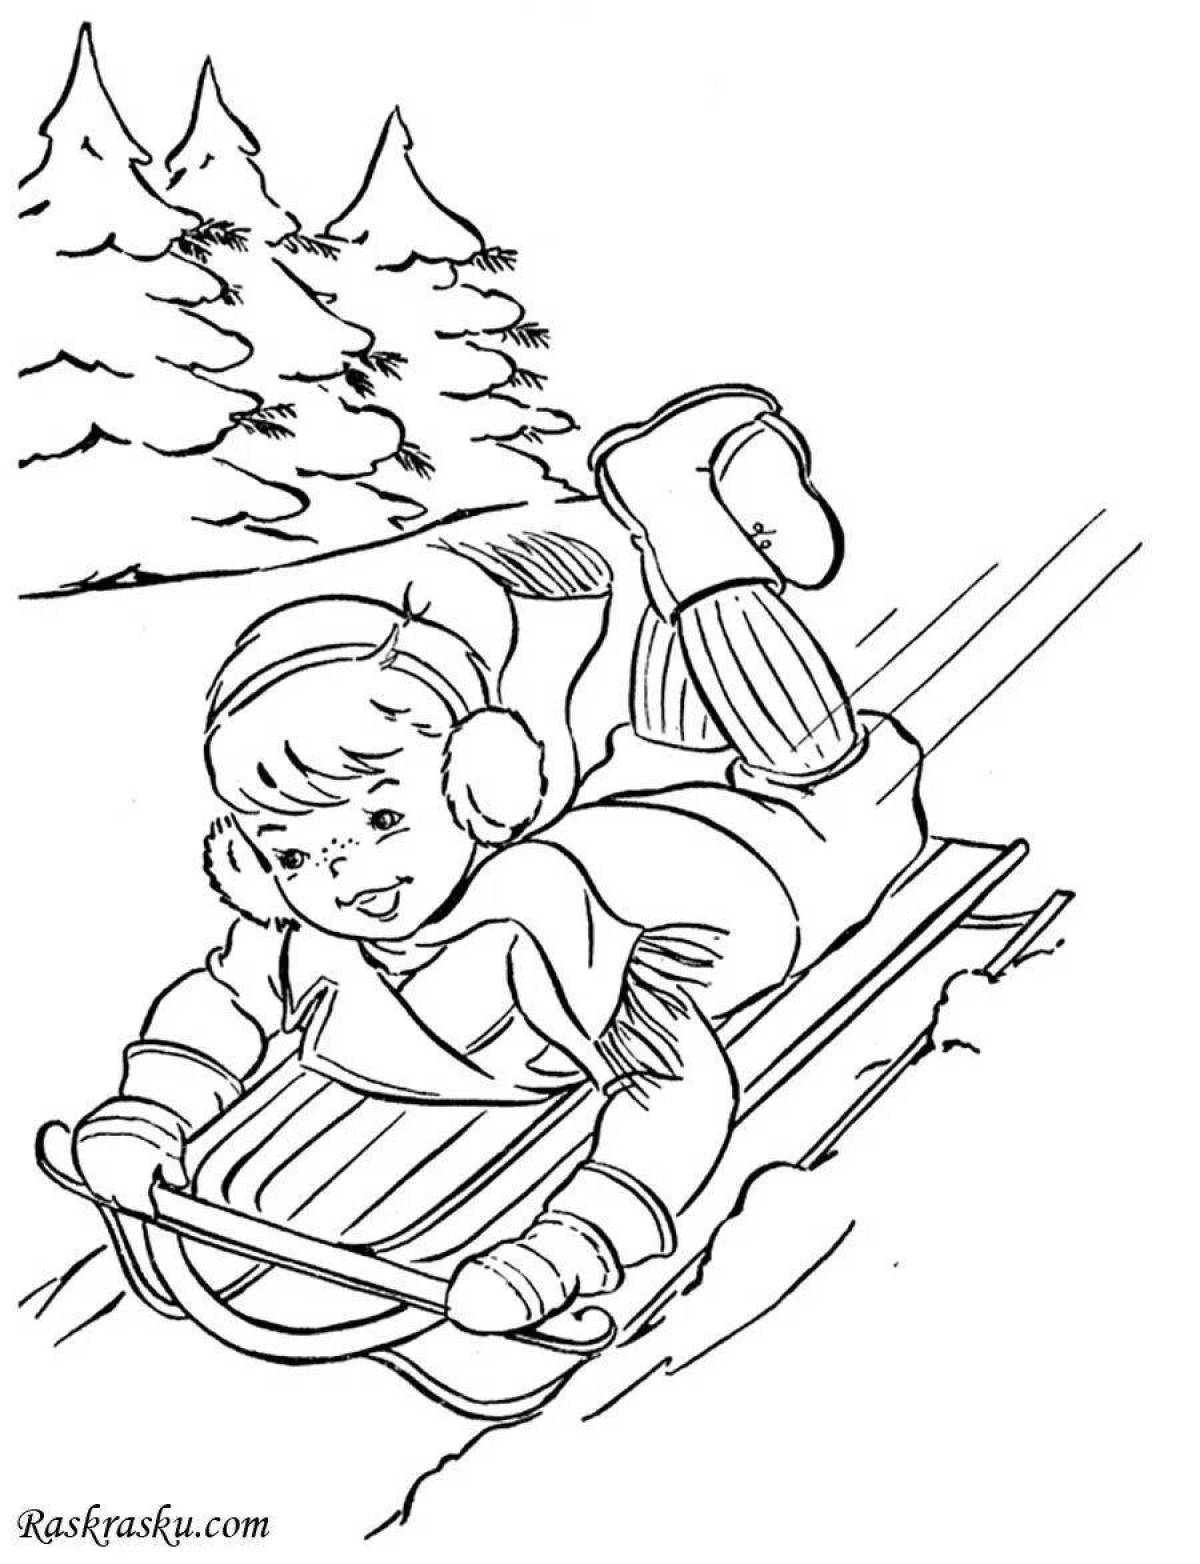 Child sledding #1